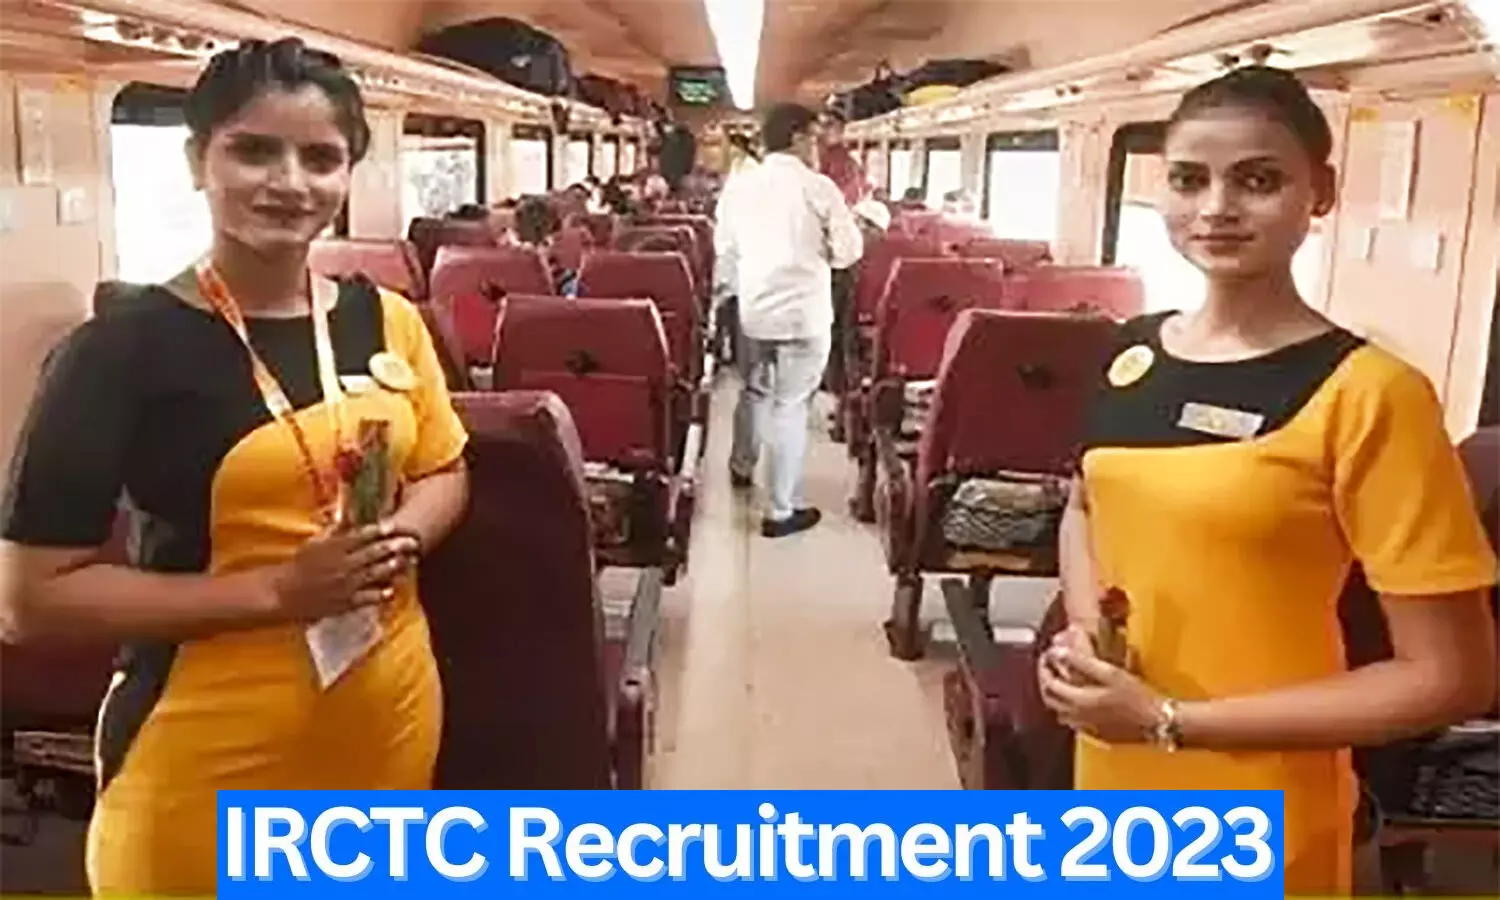 IRCTC Recruitment 2023: आईआरसीटीसी में टूरिज्म मॉनिटर सहित 176 पदों पर निकली वैकेंसी, वॉक इन इंटरव्यू से होगा सिलेक्शन